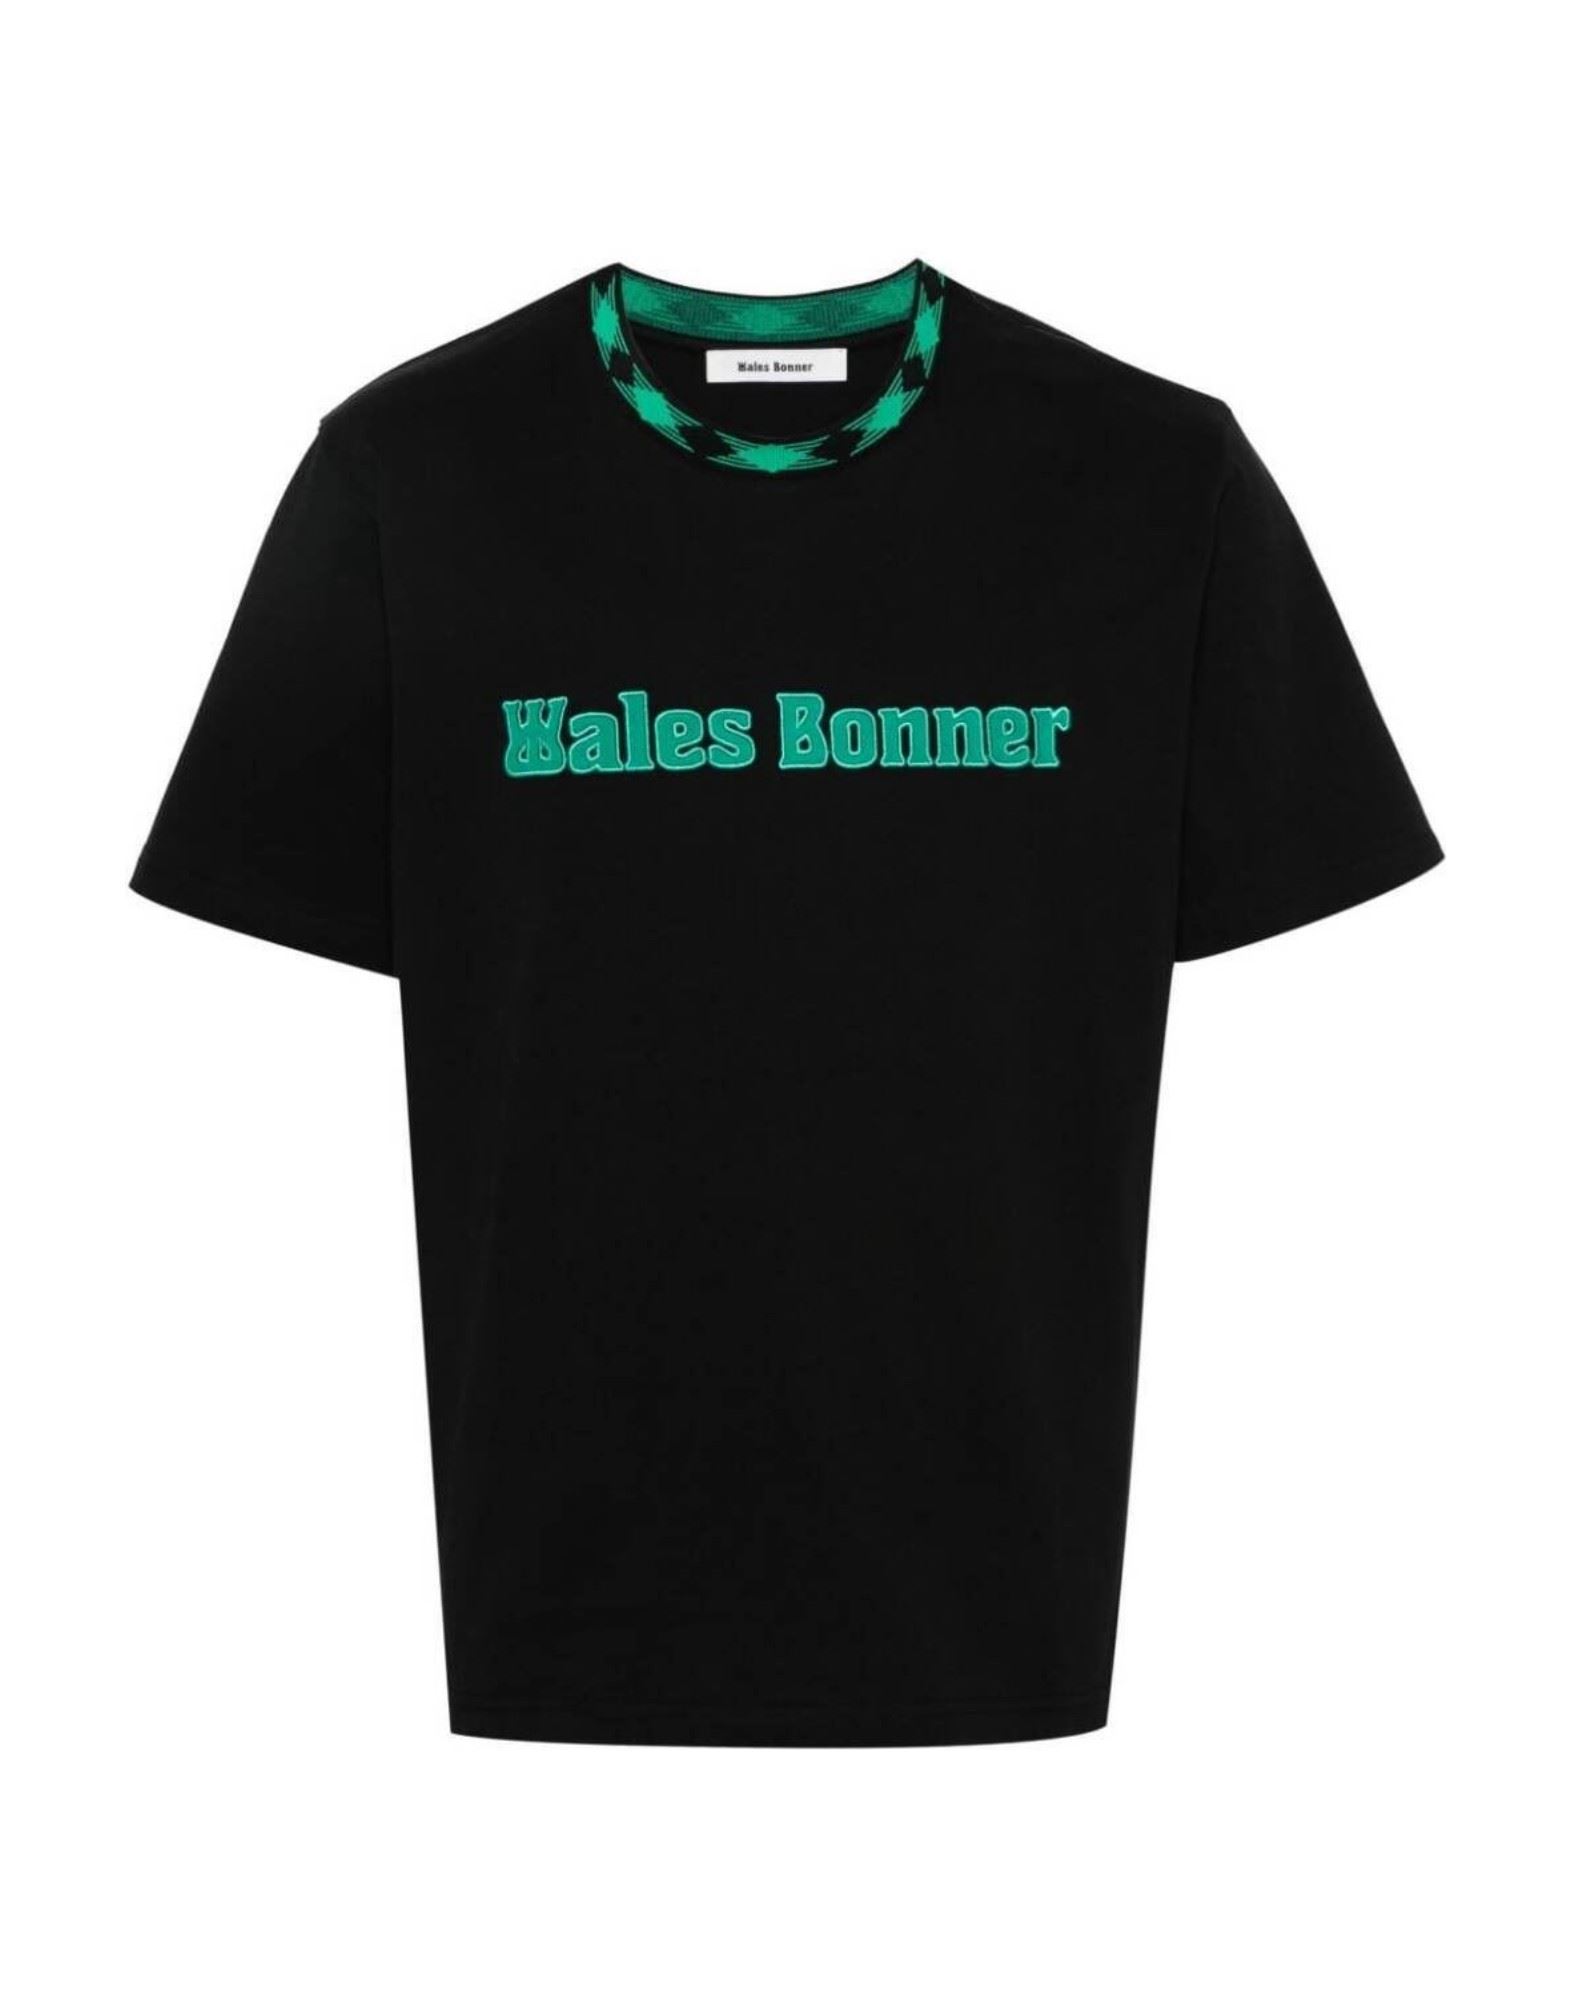 WALES BONNER T-shirts Herren Schwarz von WALES BONNER